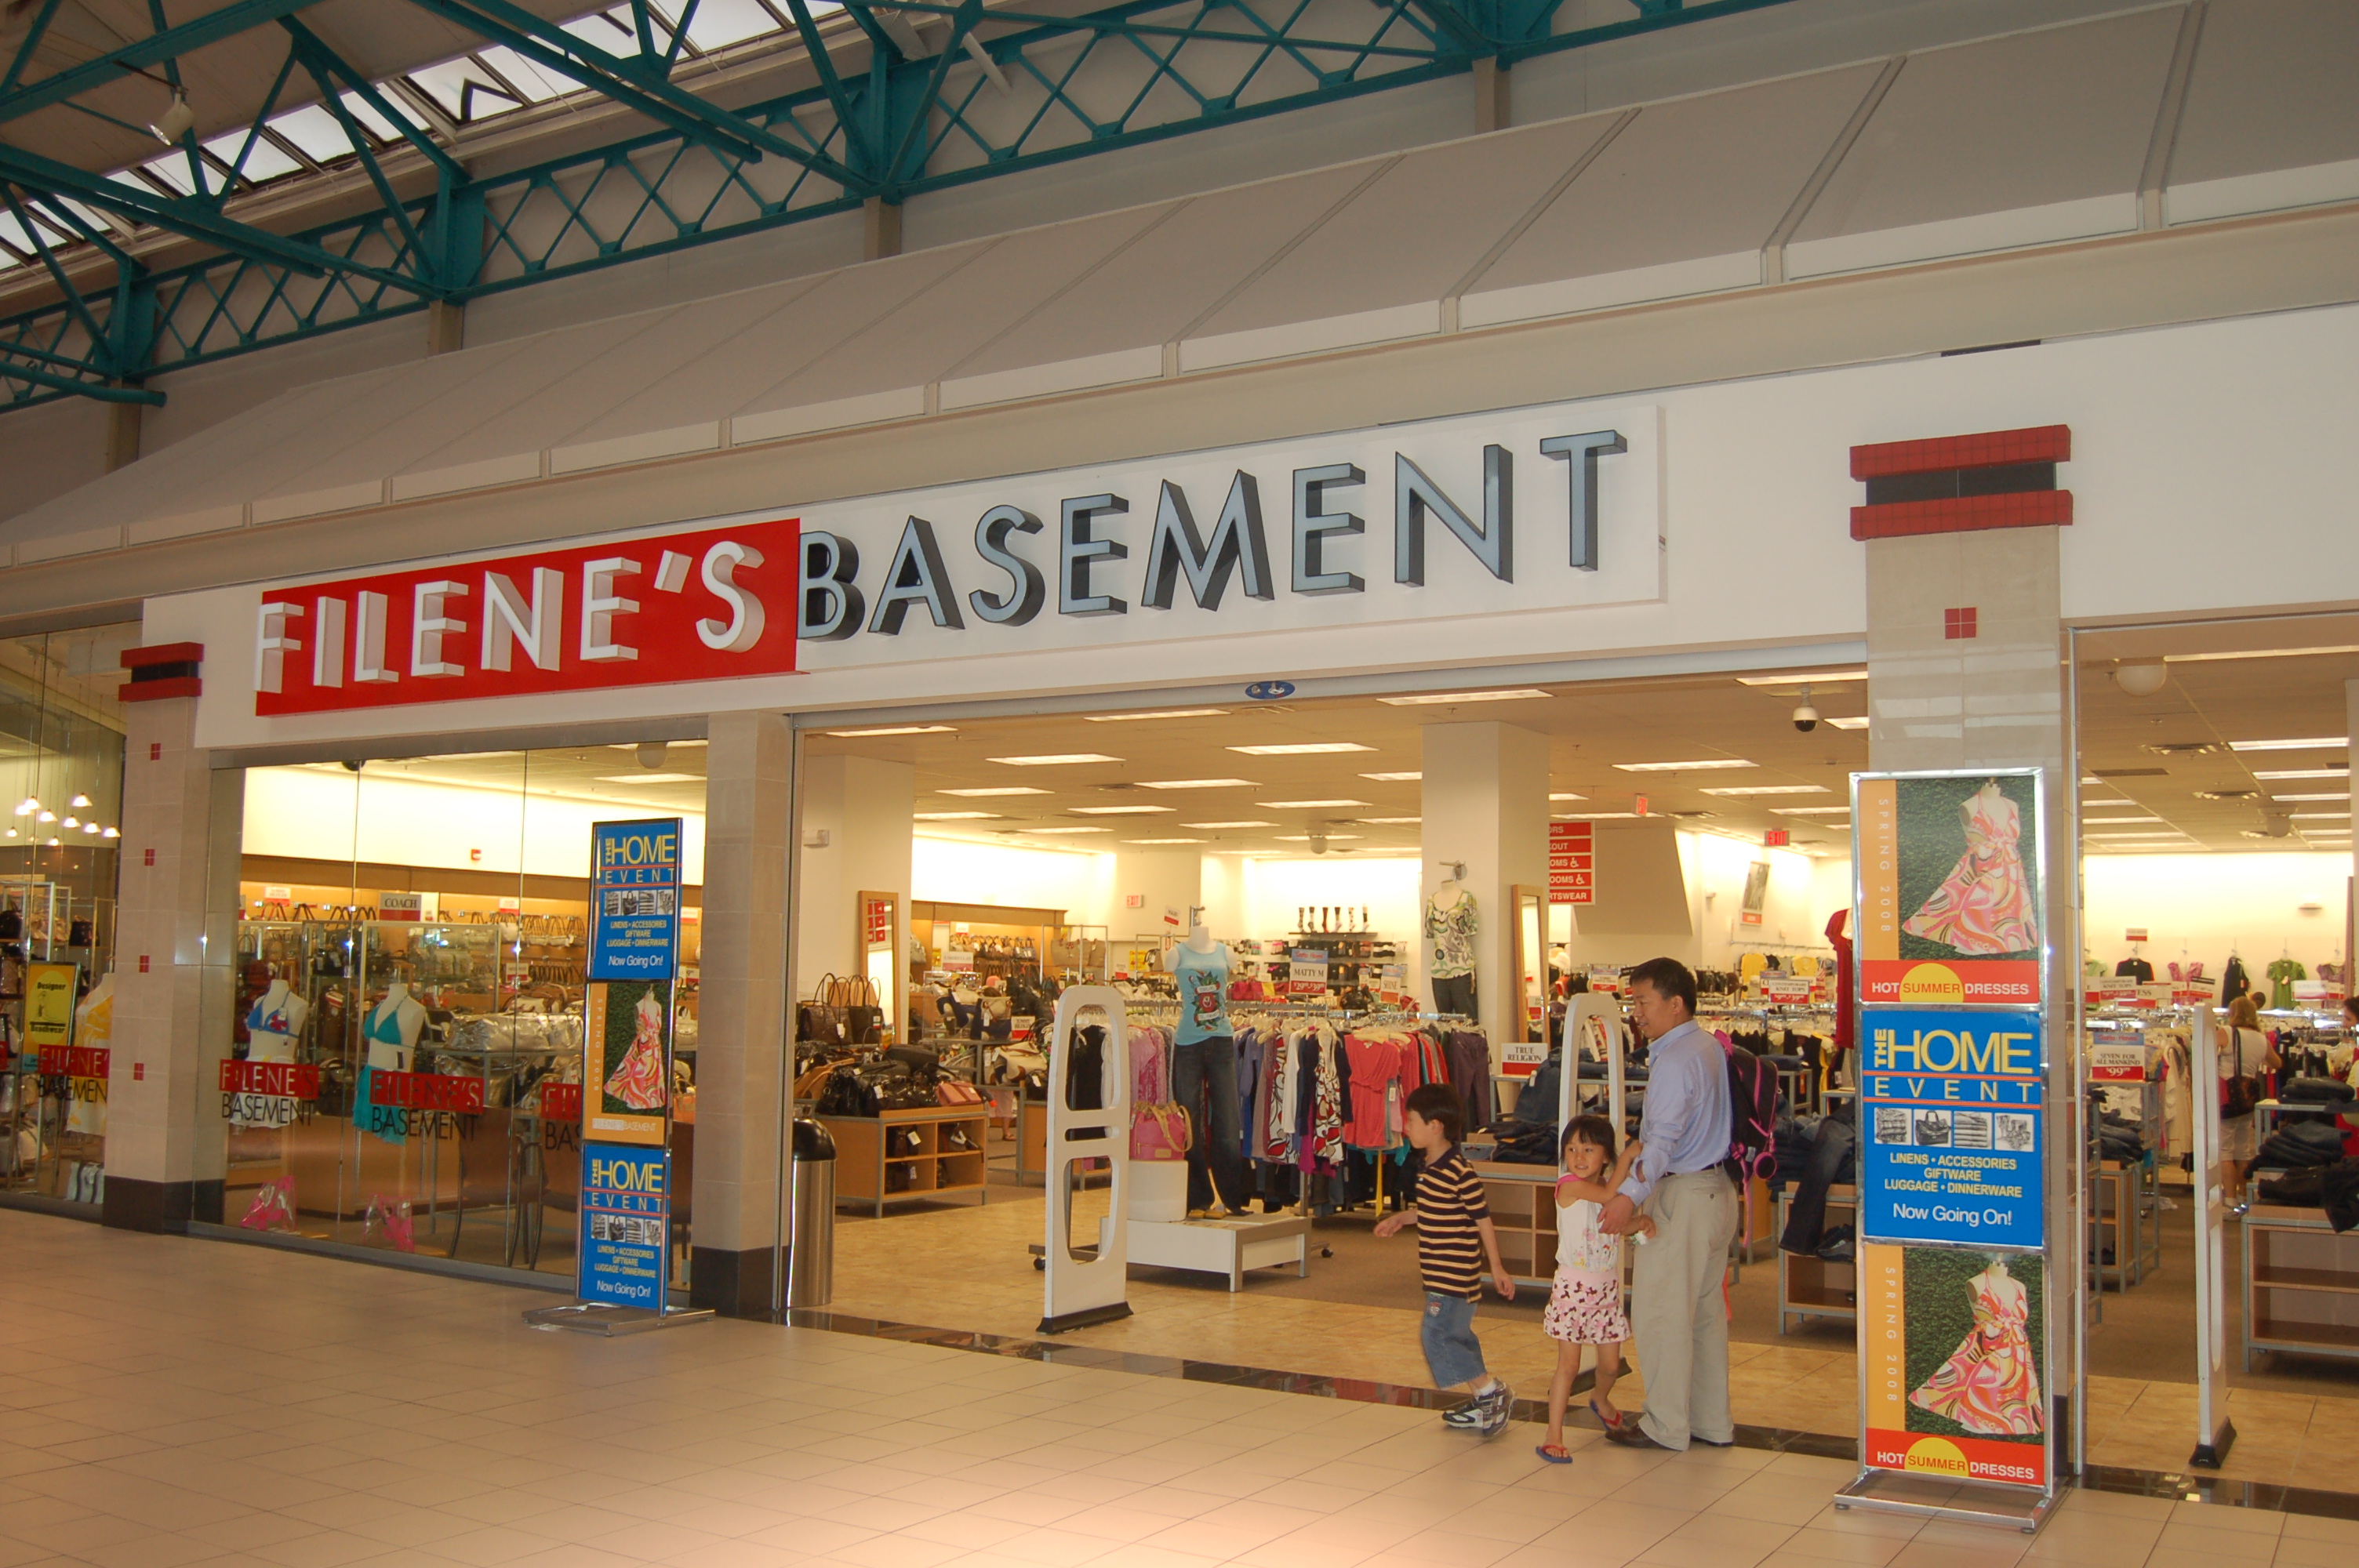 Filenes Basement Arsenal Mall DSH Design Group